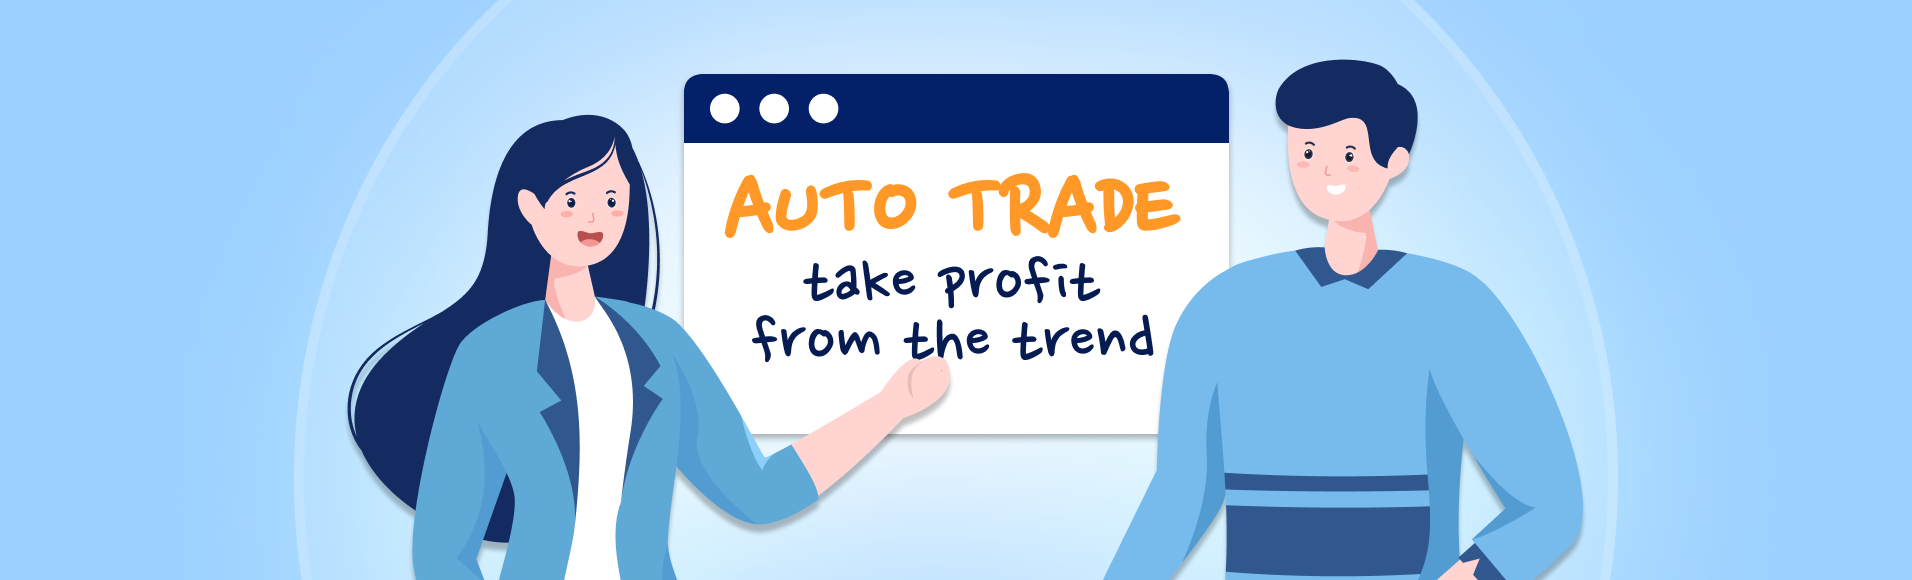 Auto trade: lucre com a tendência